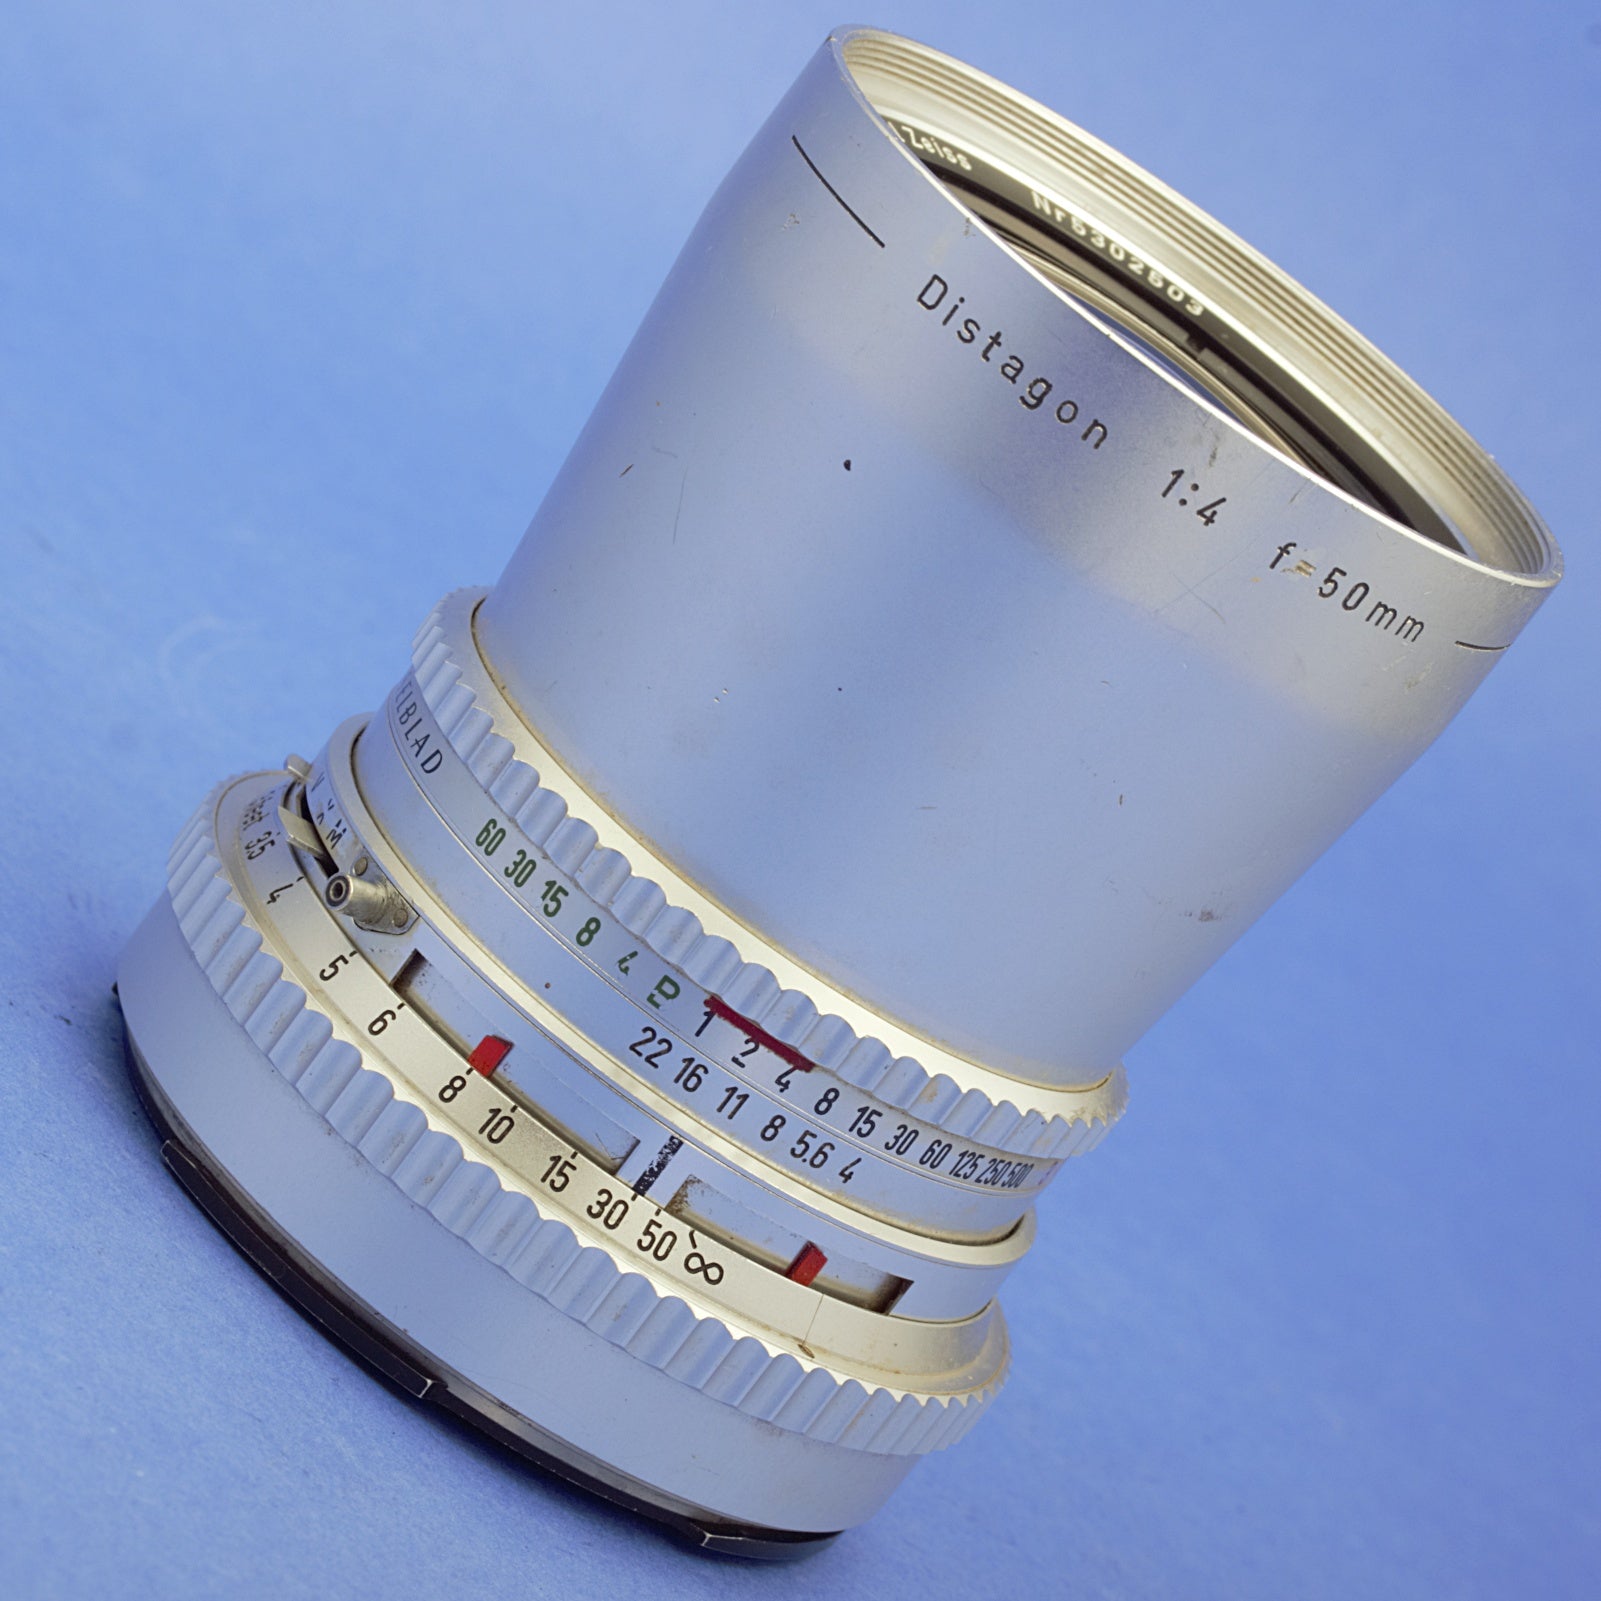 Hasselblad 50mm F4 C Lens